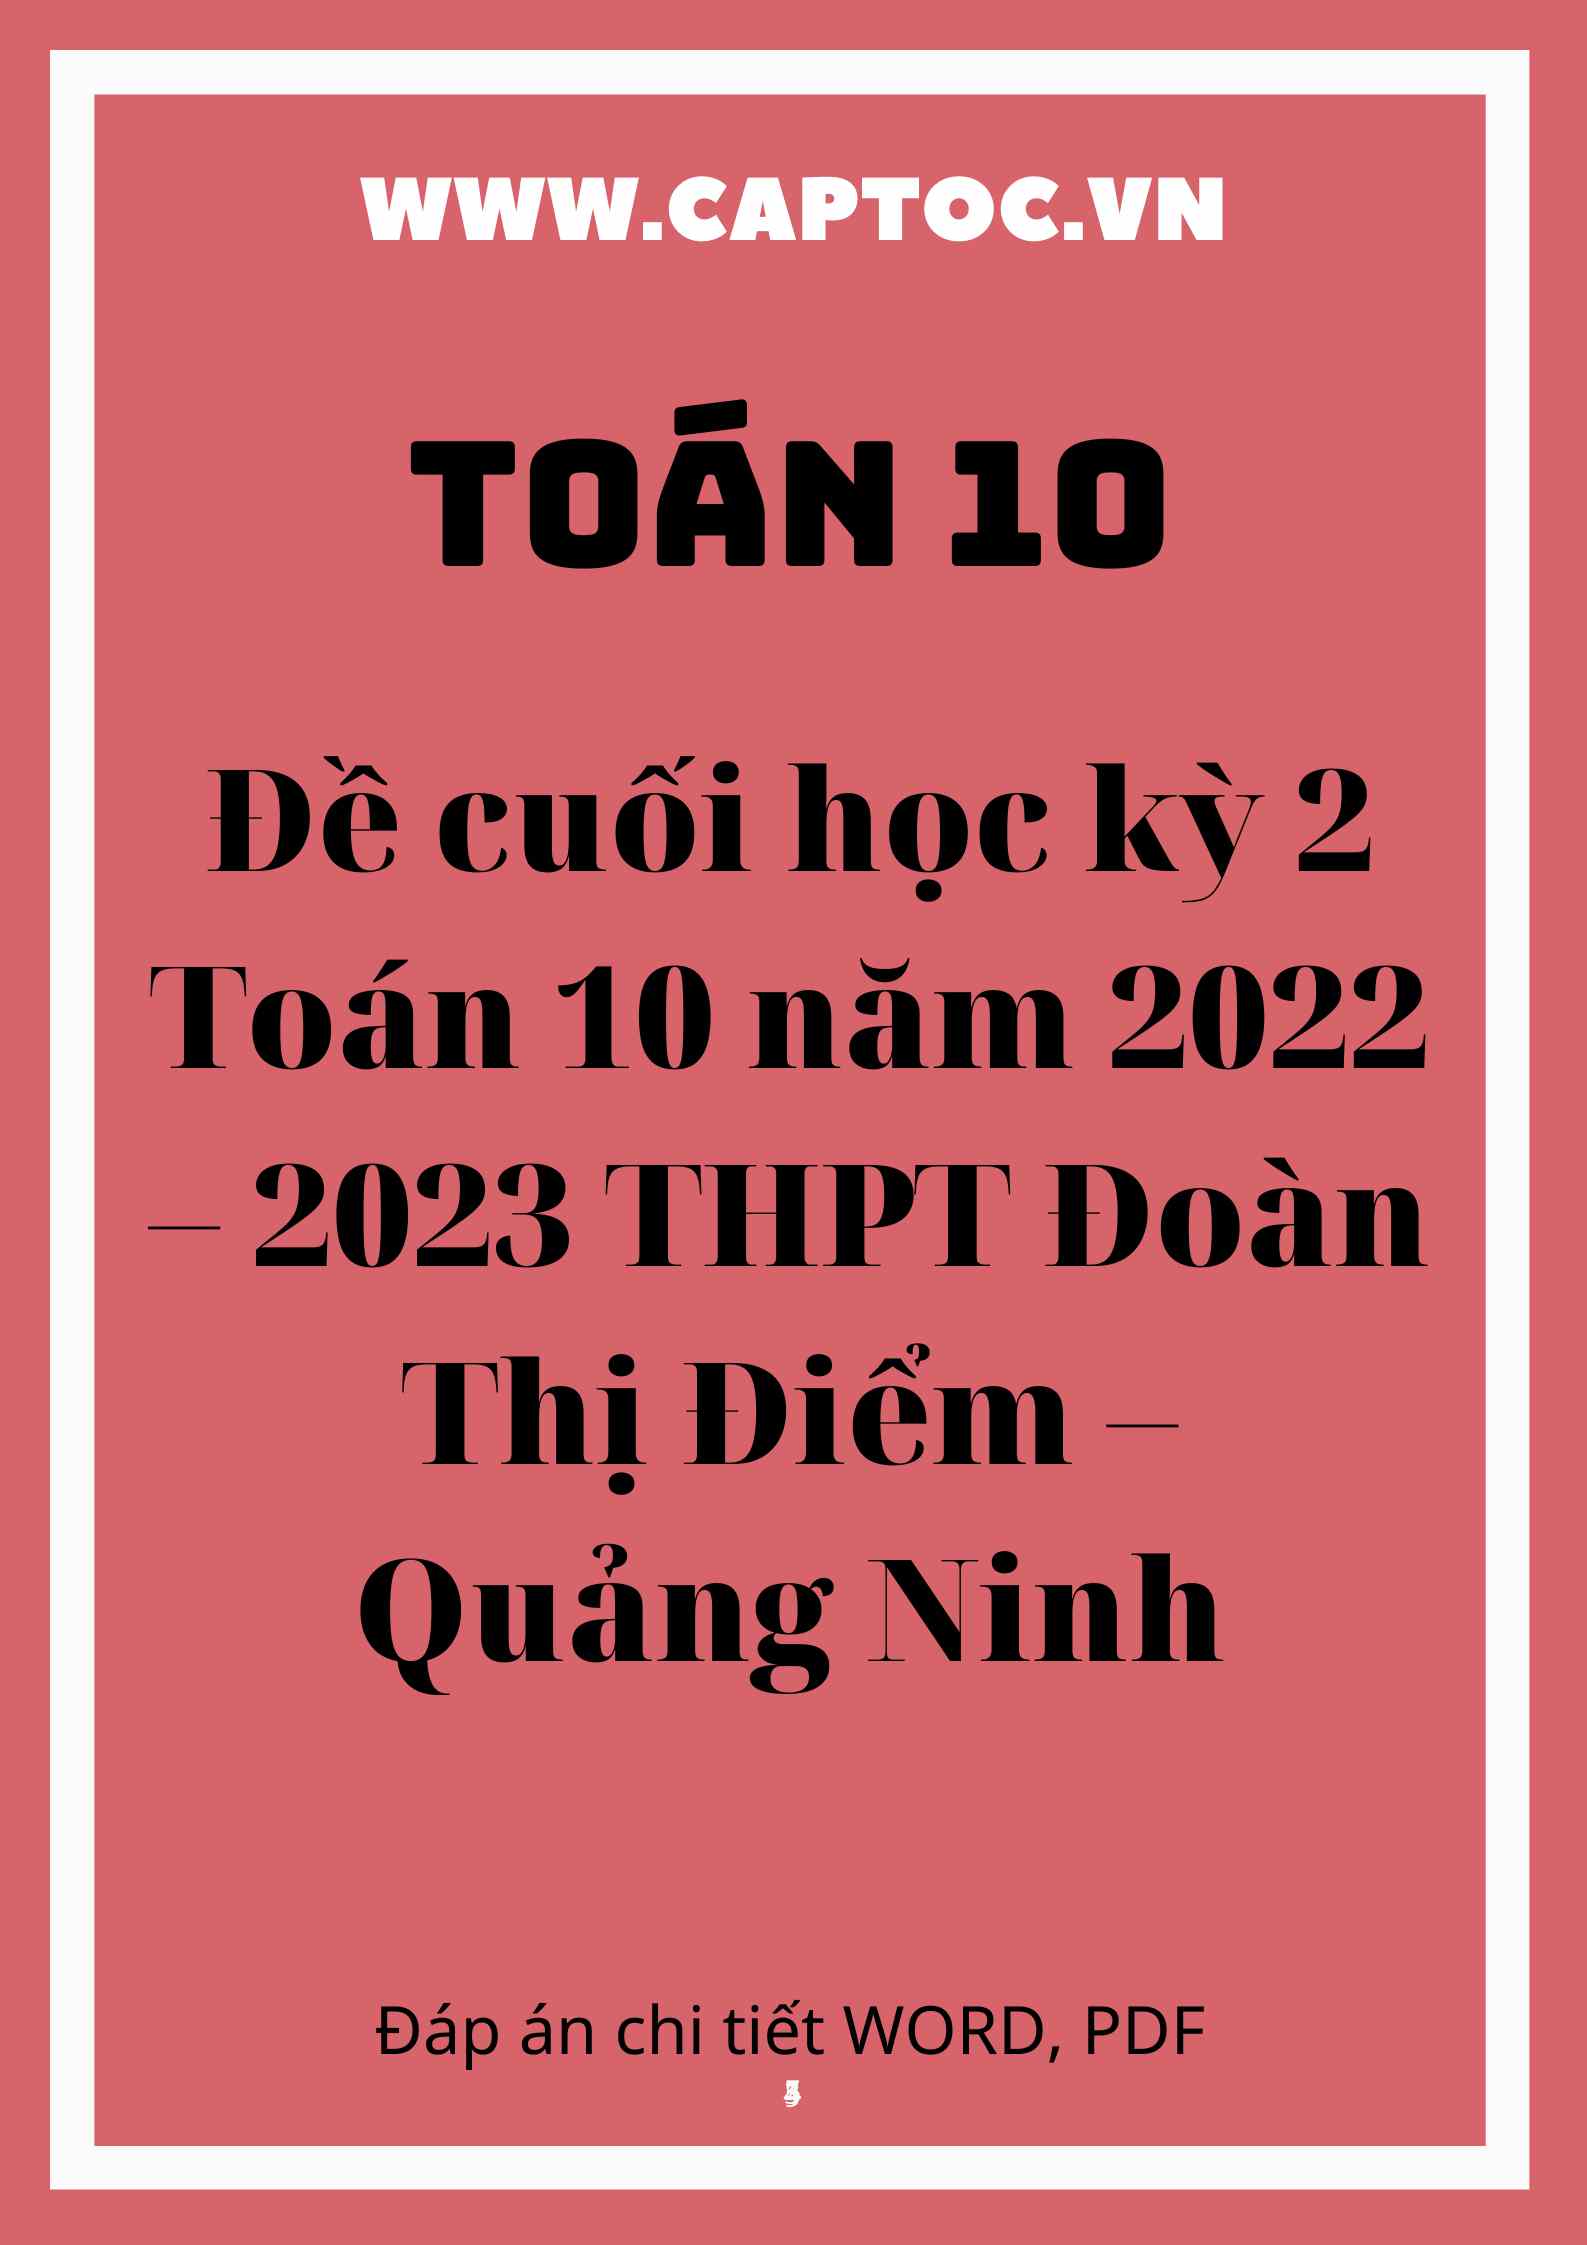 Đề cuối học kỳ 2 Toán 10 năm 2022 – 2023 trường THPT Đoàn Thị Điểm – Quảng Ninh